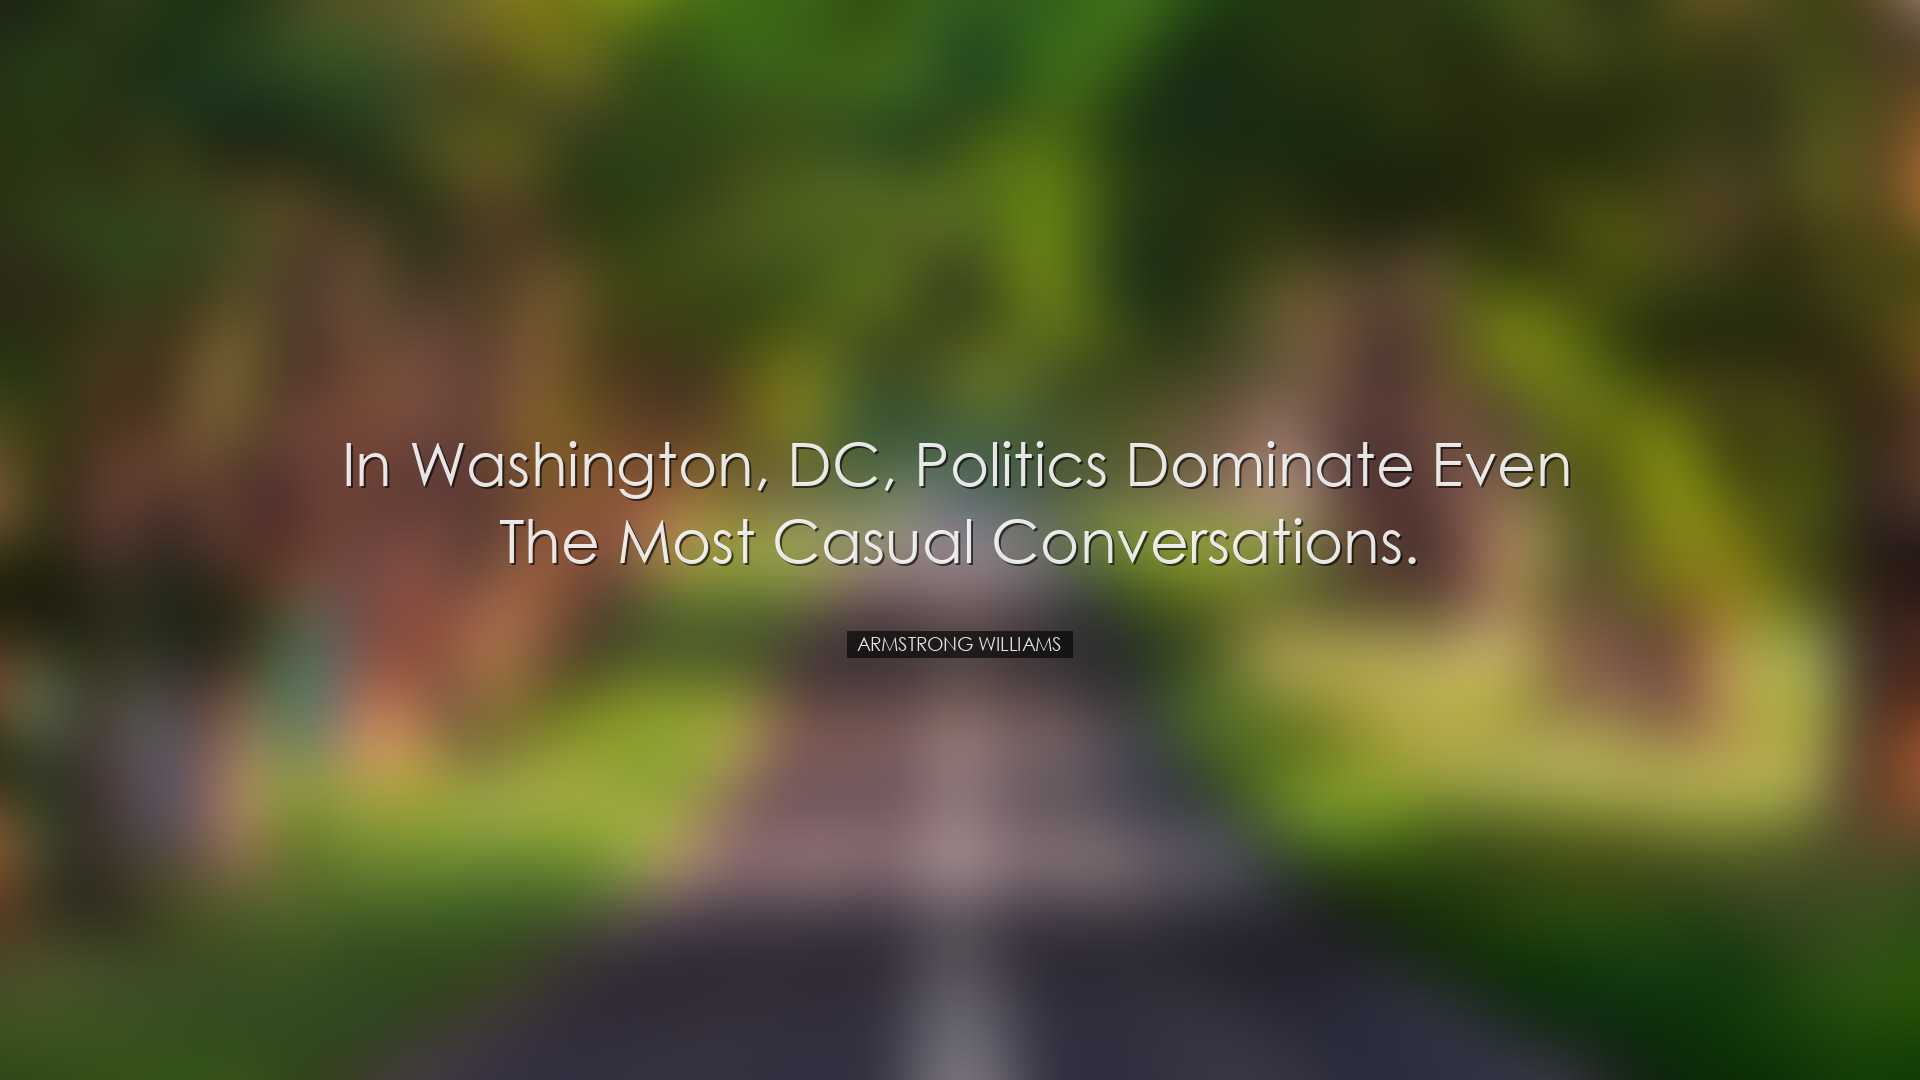 In Washington, DC, politics dominate even the most casual conversa